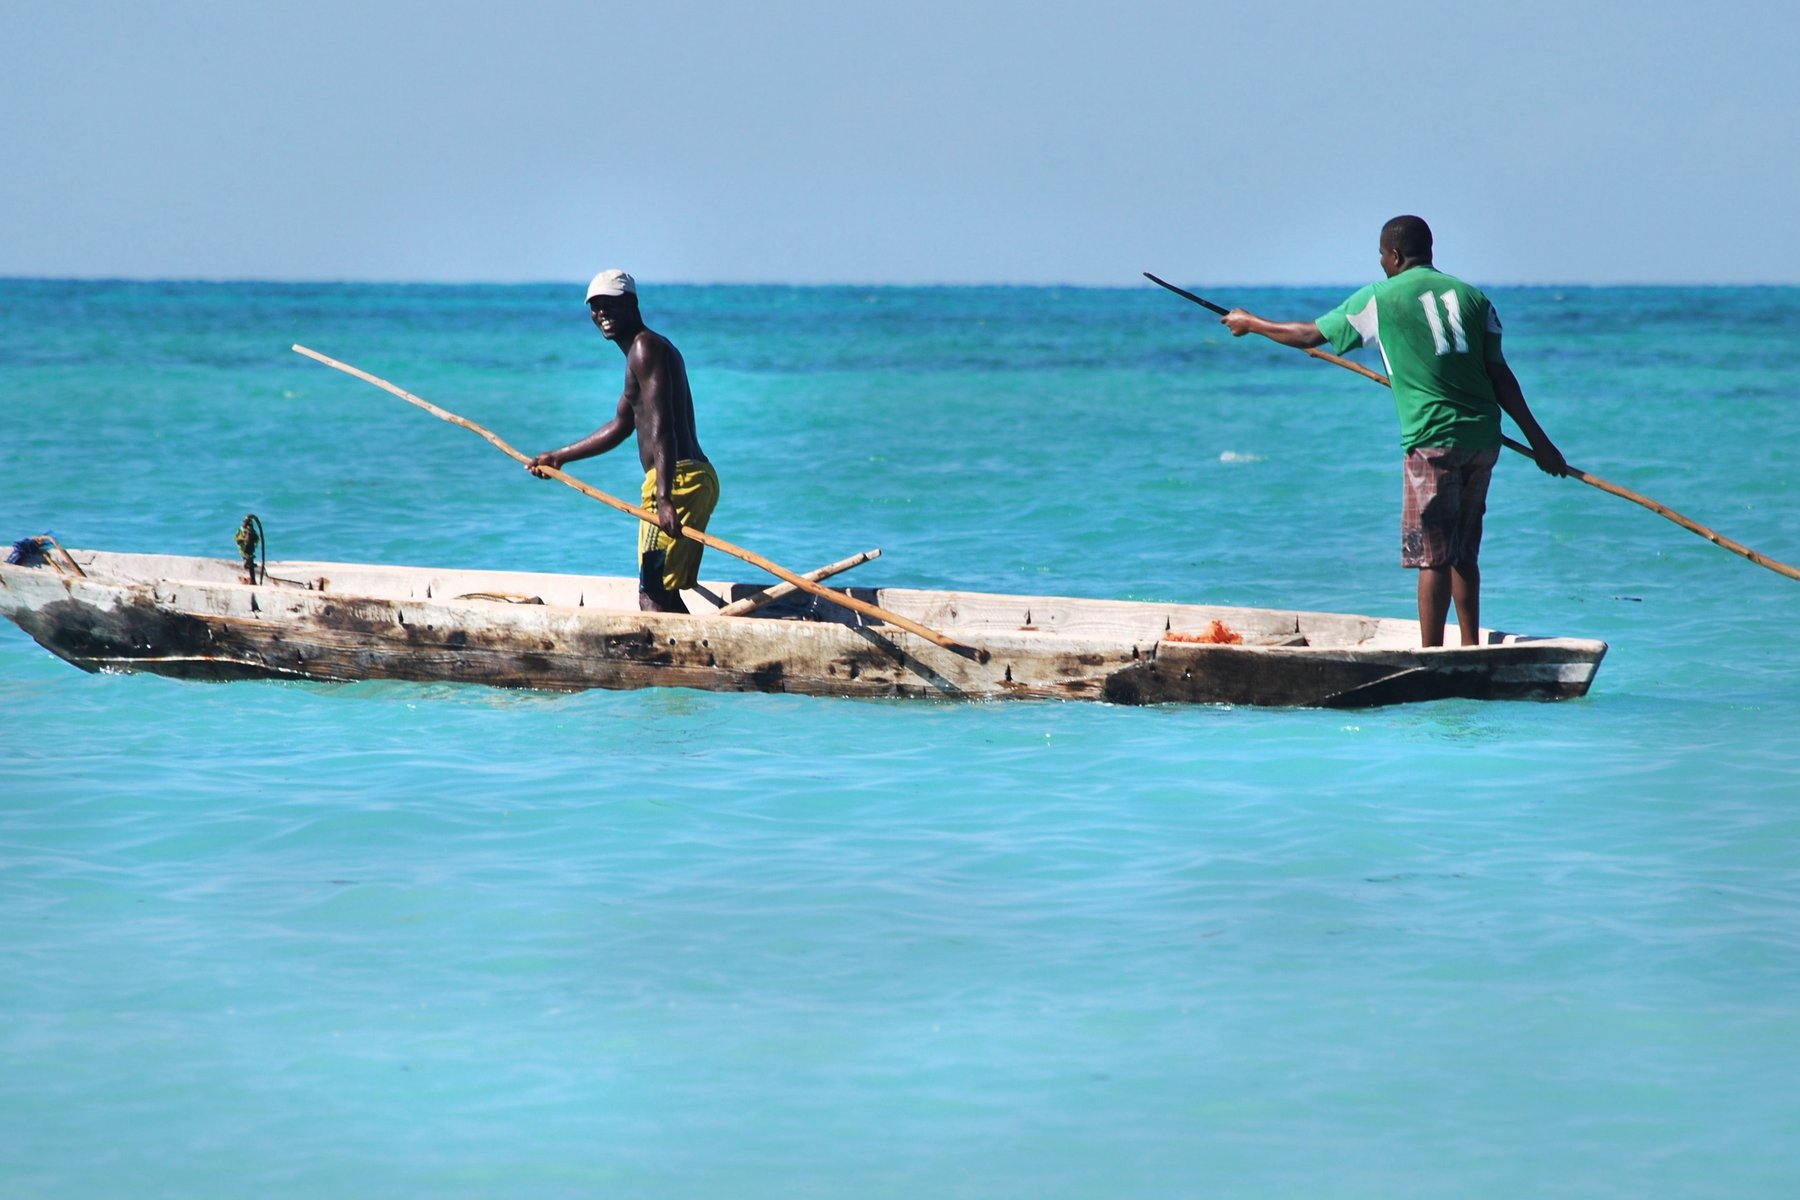 Njtut av stränder och bad på Zanzibar